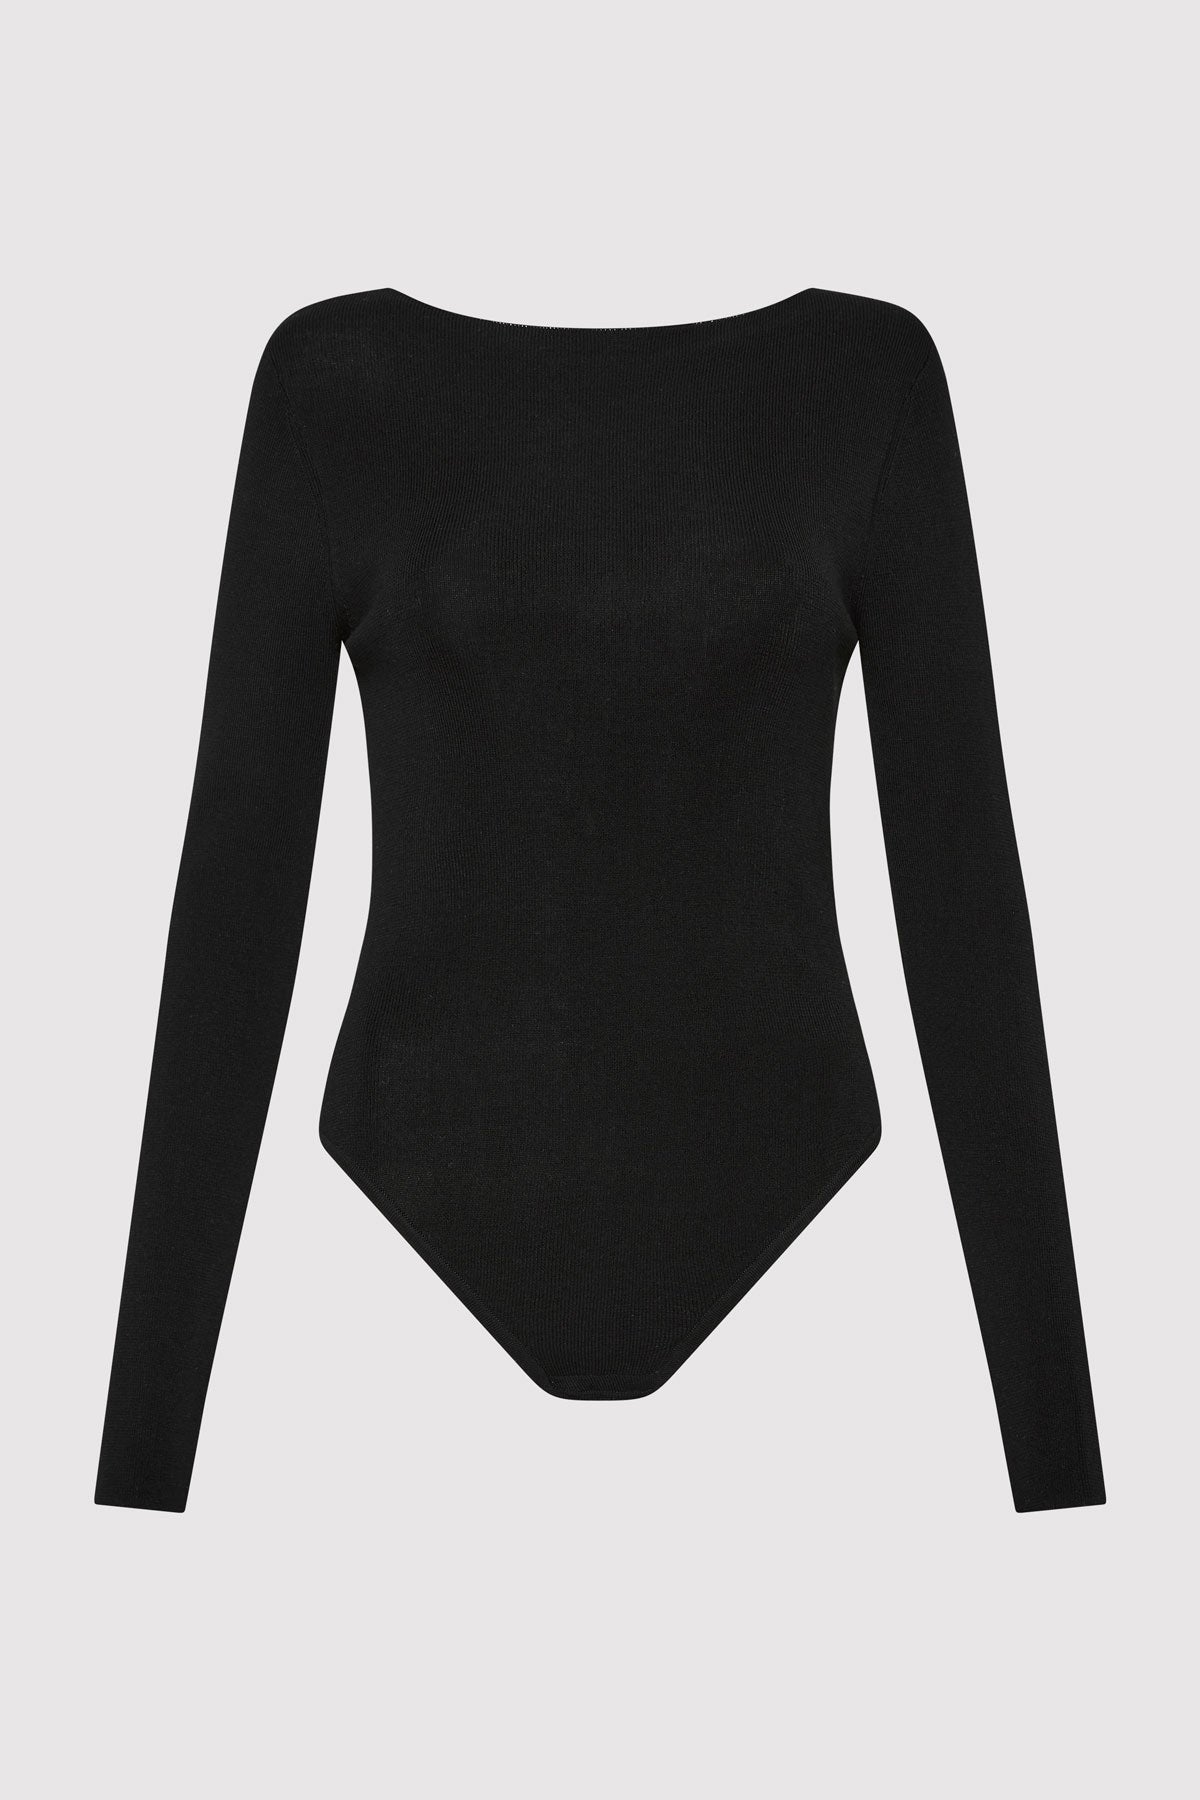 Cut Out Bodysuit - Black